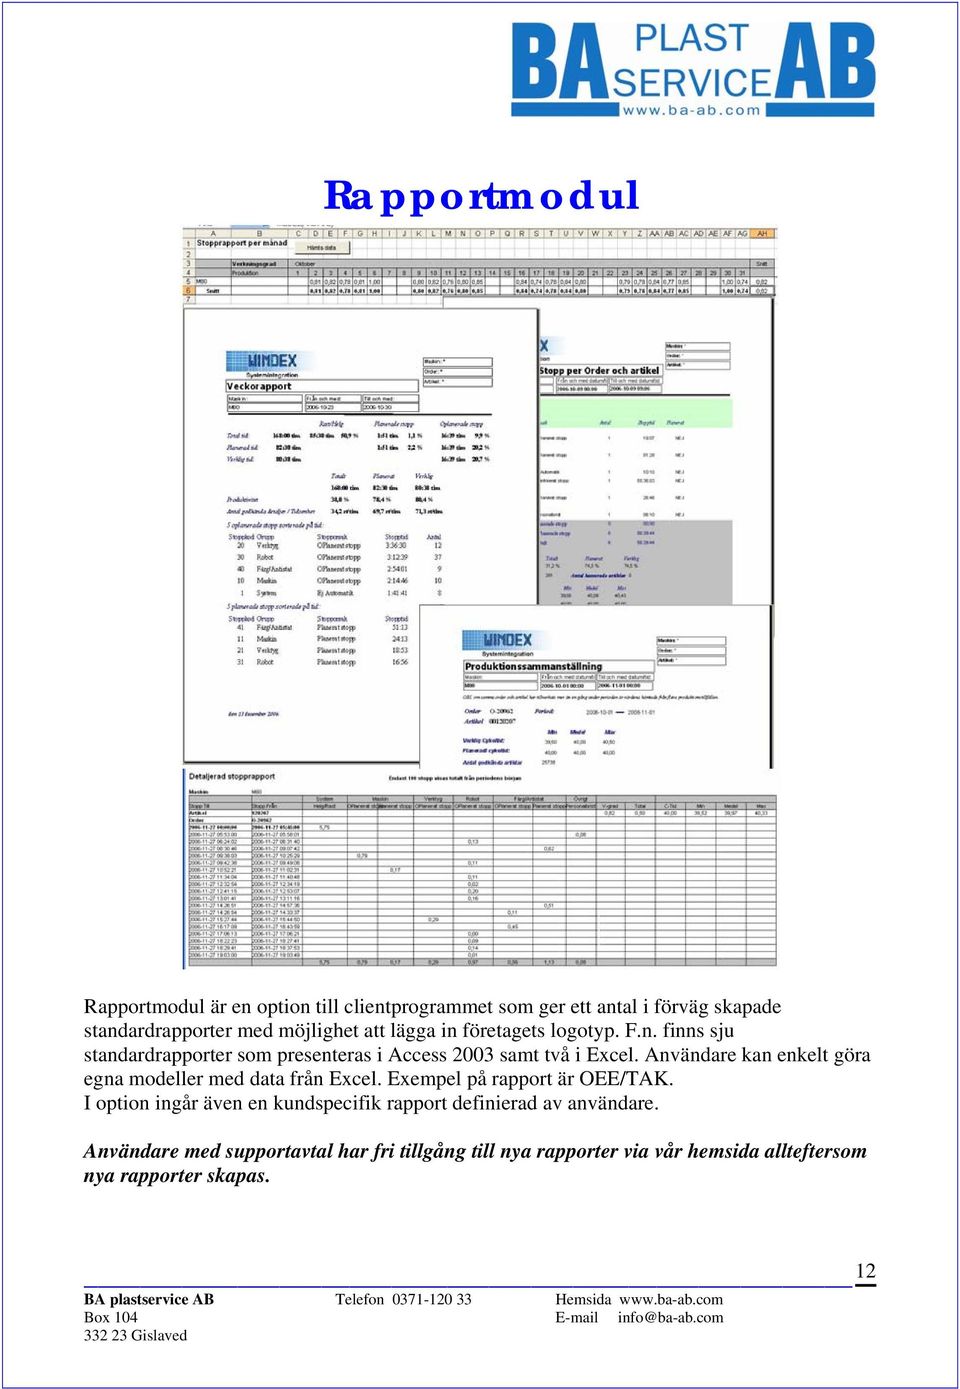 Användare kan enkelt göra egna modeller med data från Excel. Exempel på rapport är OEE/TAK.